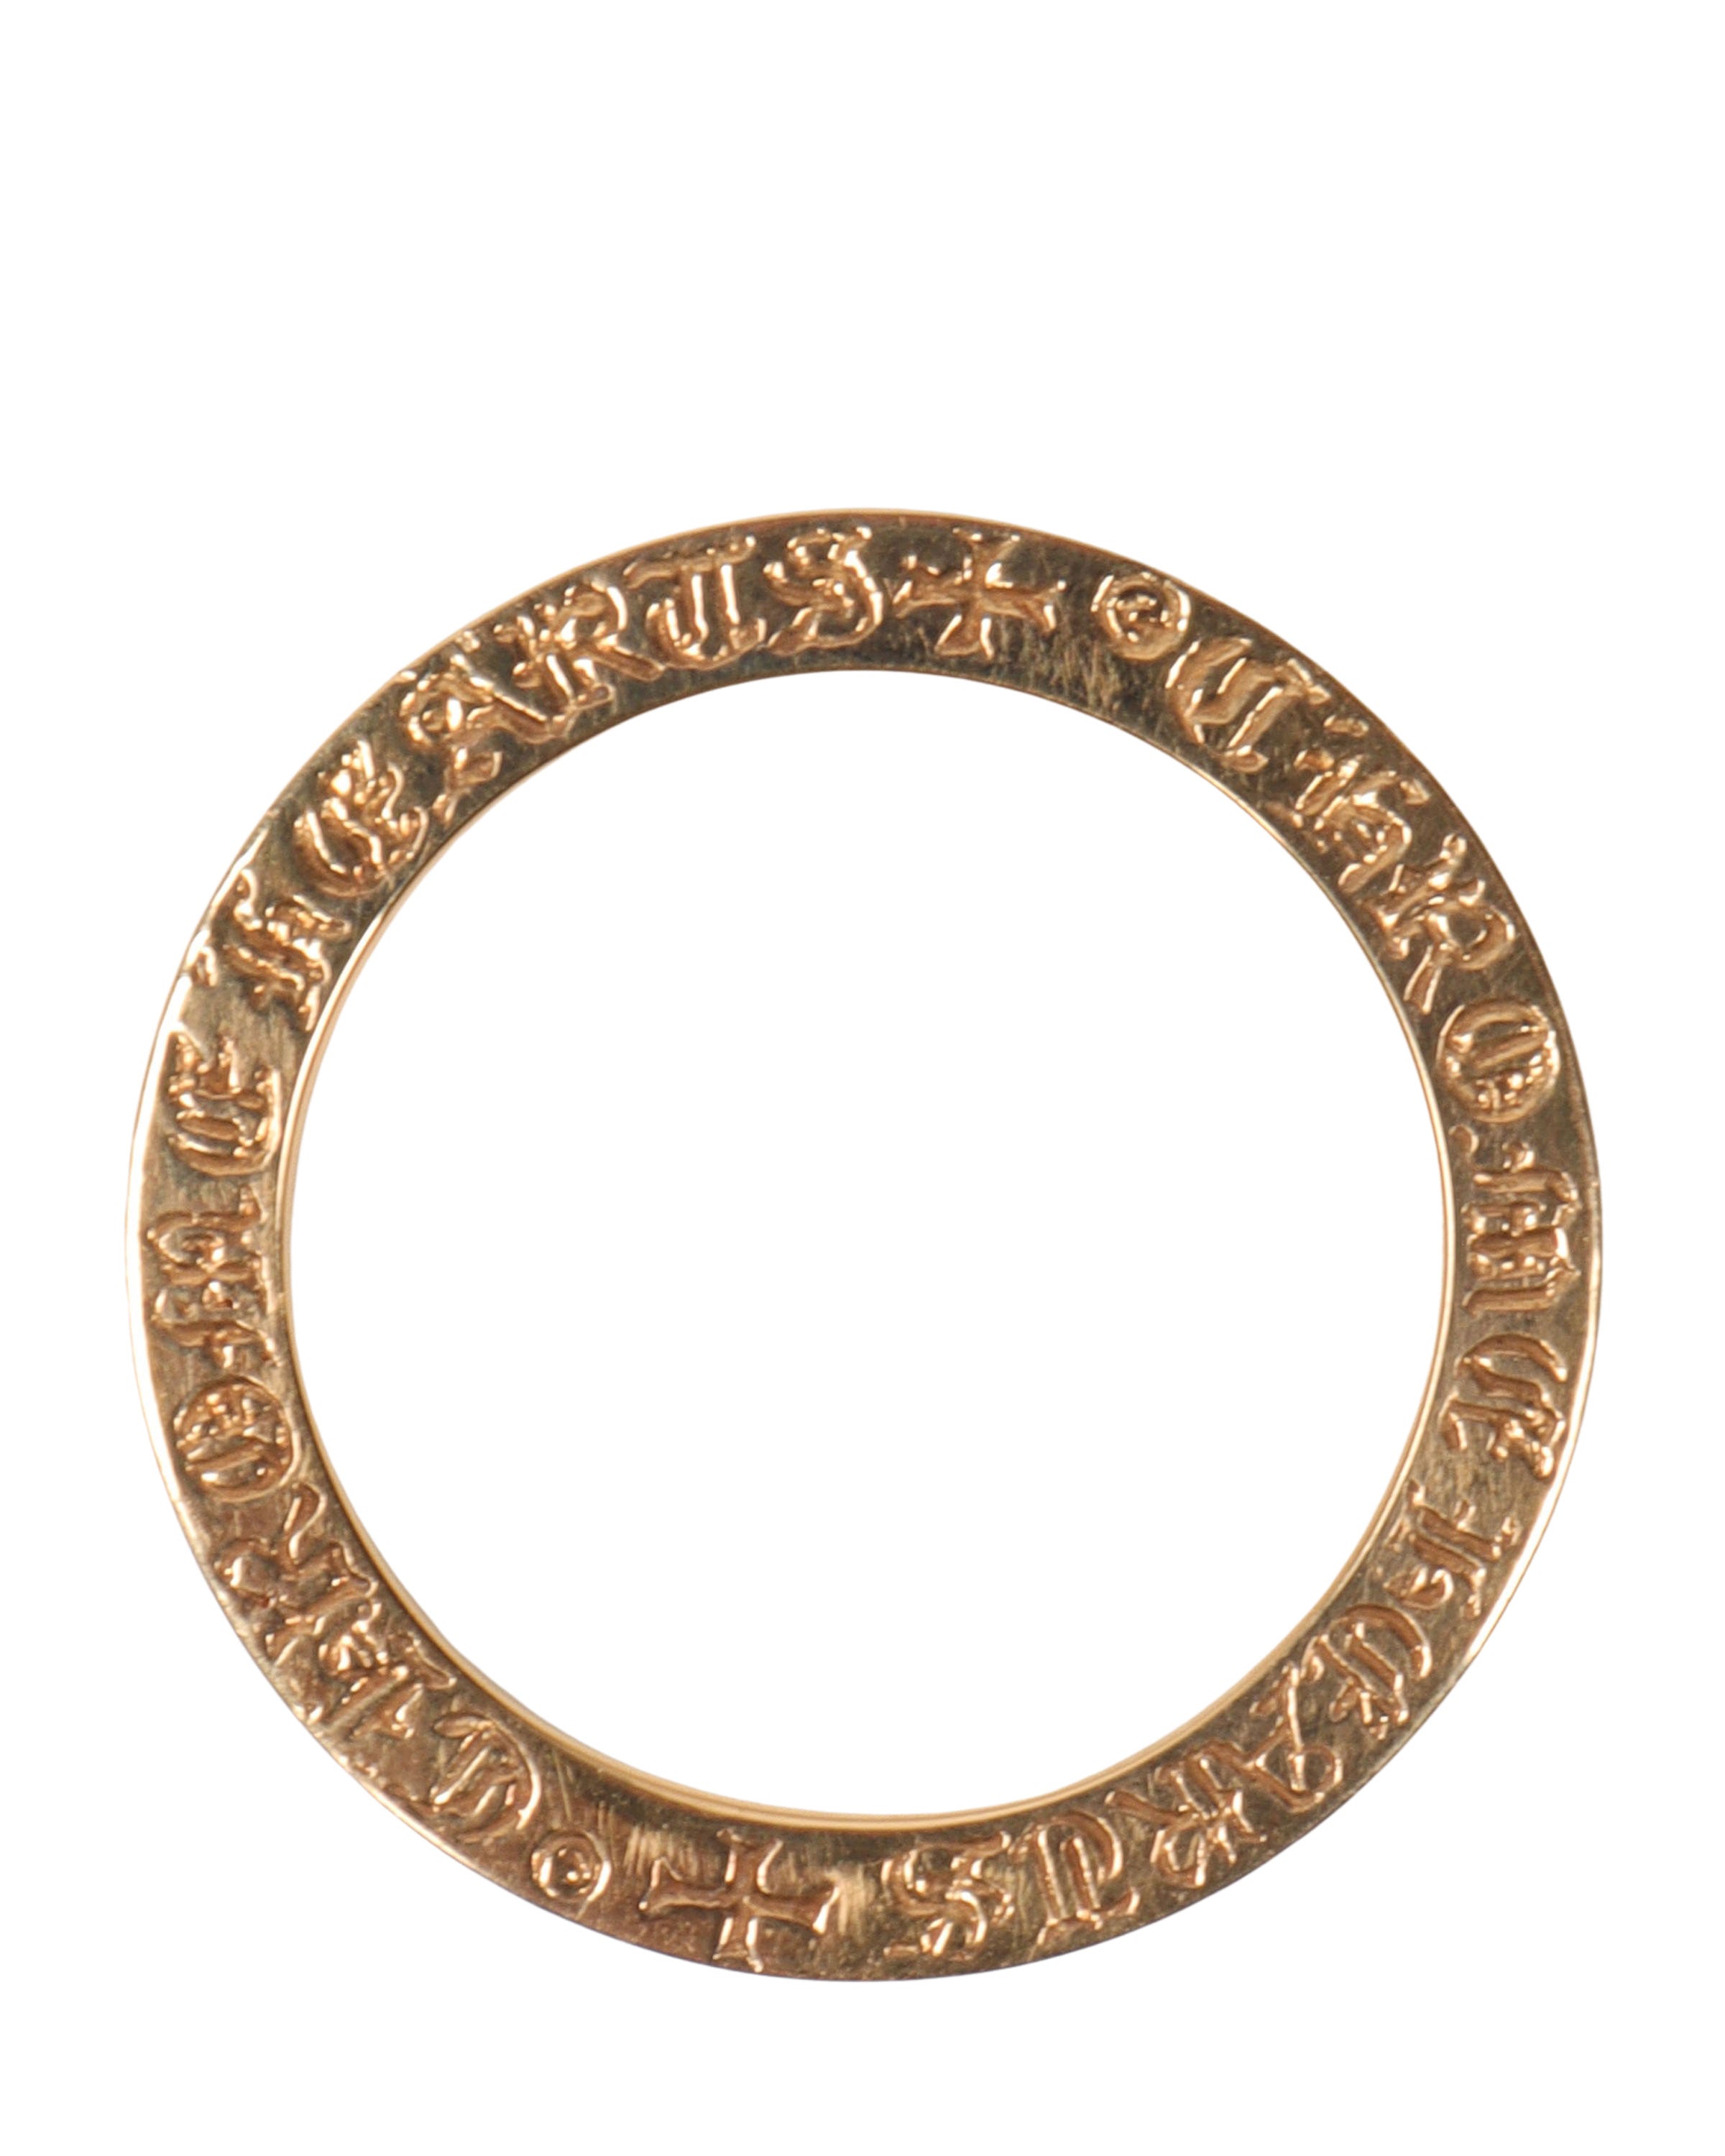 Custom Engraved "Margaret" 22k Gold Ring